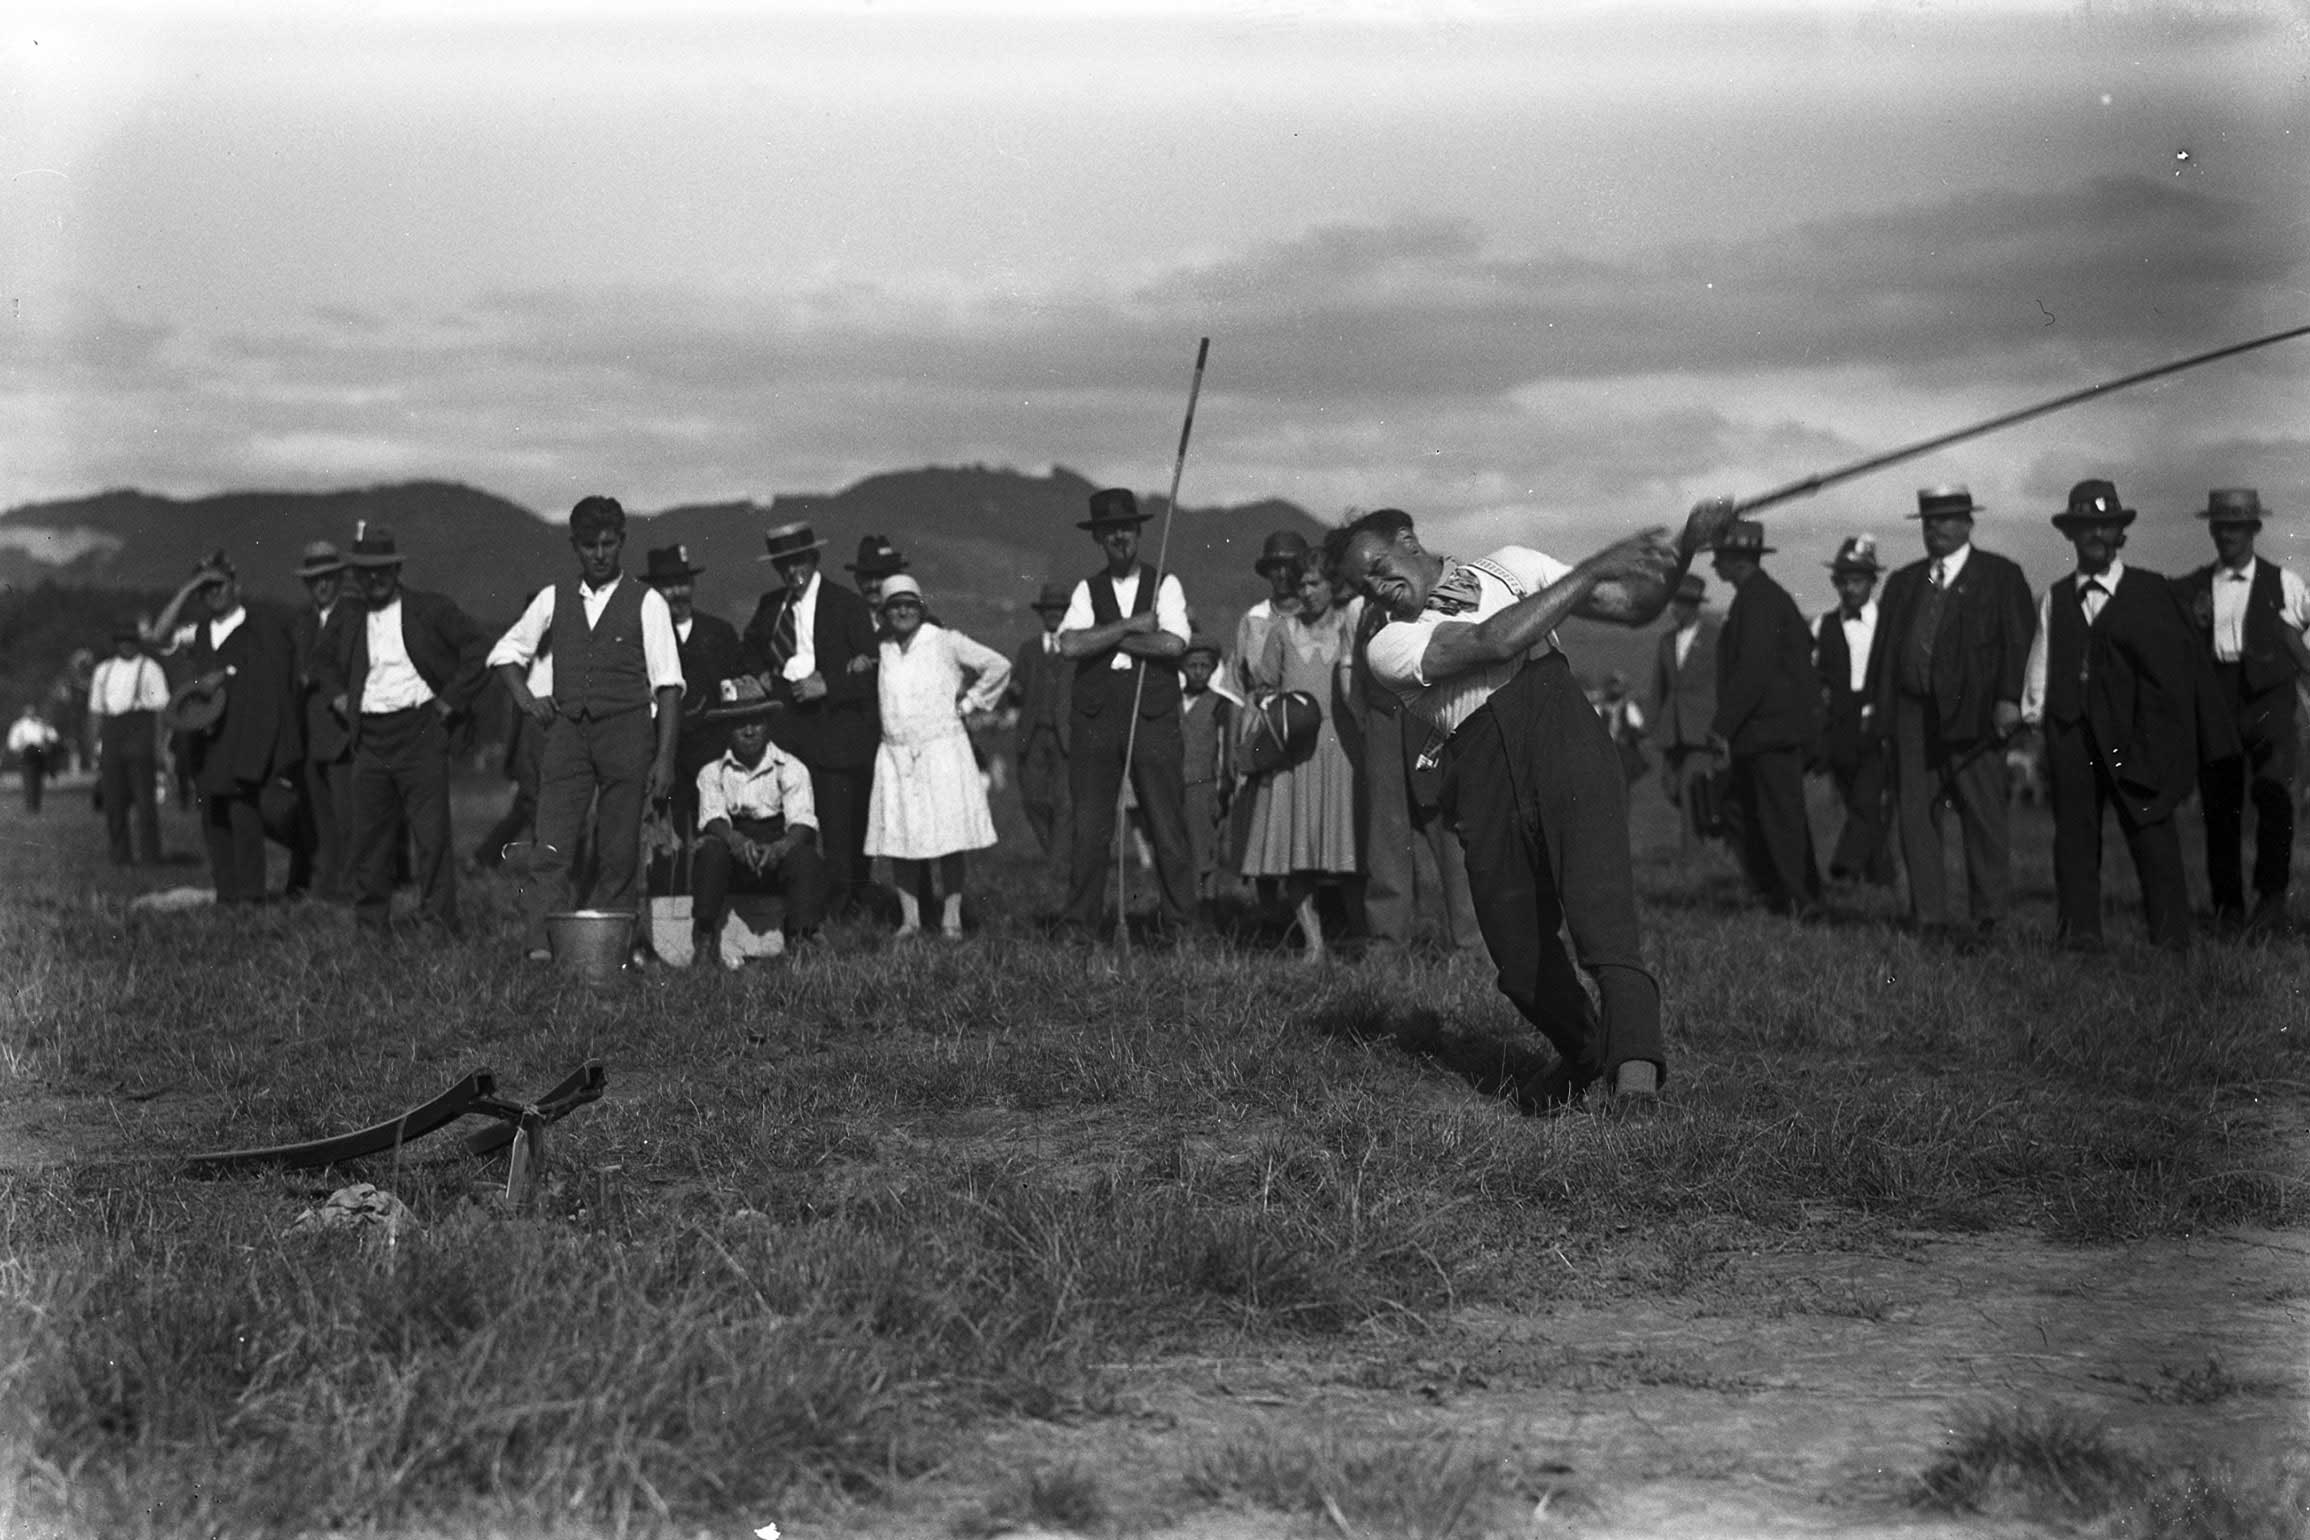 Eidgenössisches Hornusserfest Thun, 1930: Hornusser beim Abschlag des Hornuss (Foto von Carl Jost) © Carl Jost/Staatsarchiv Bern